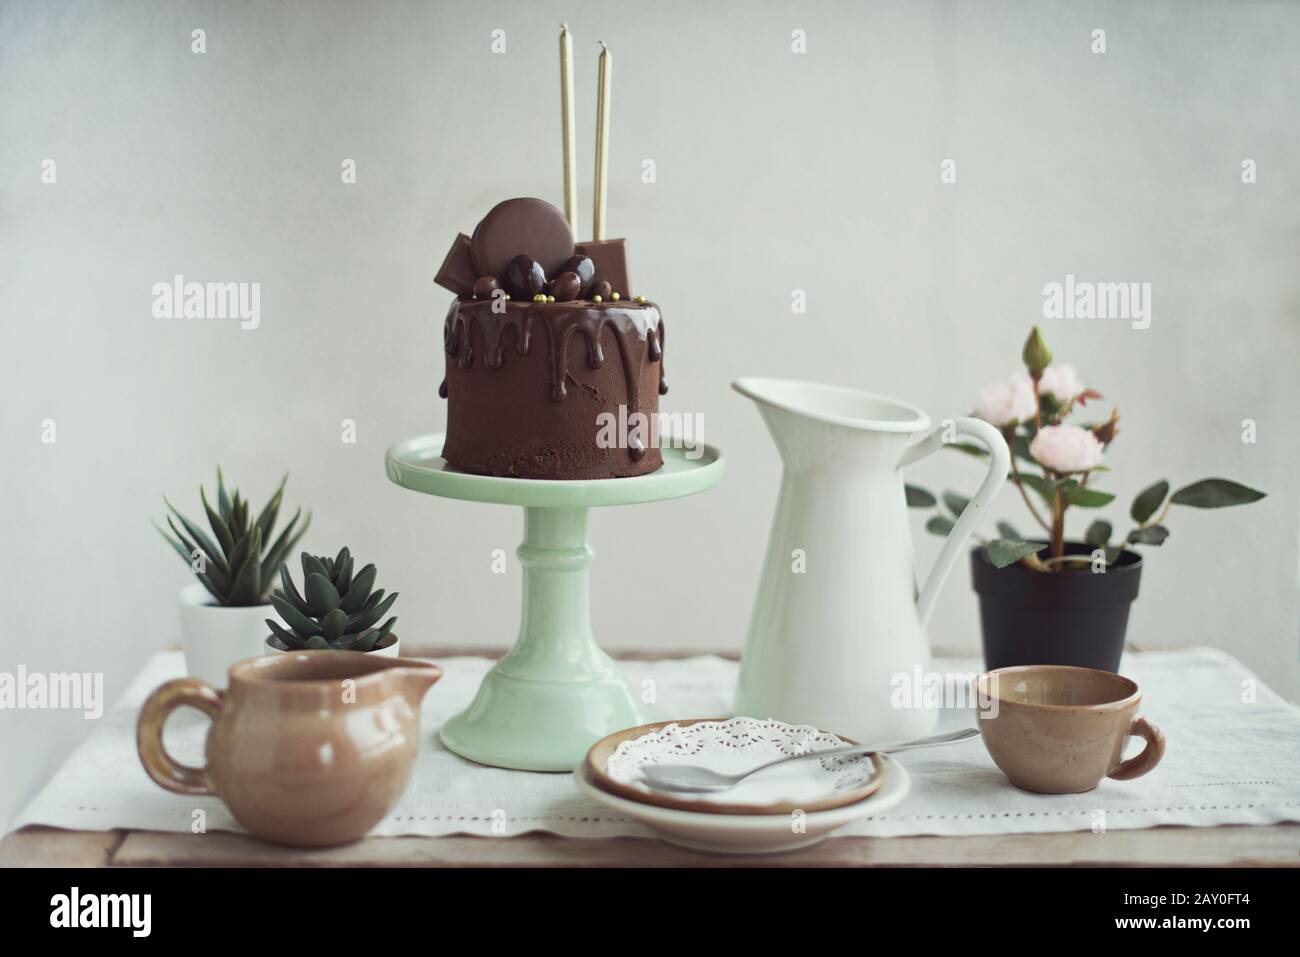 Schokoladenkuchen mit goldenen Kerzen auf einem Kakestand neben saftigen Pflanzen und Geschirr Stockfoto